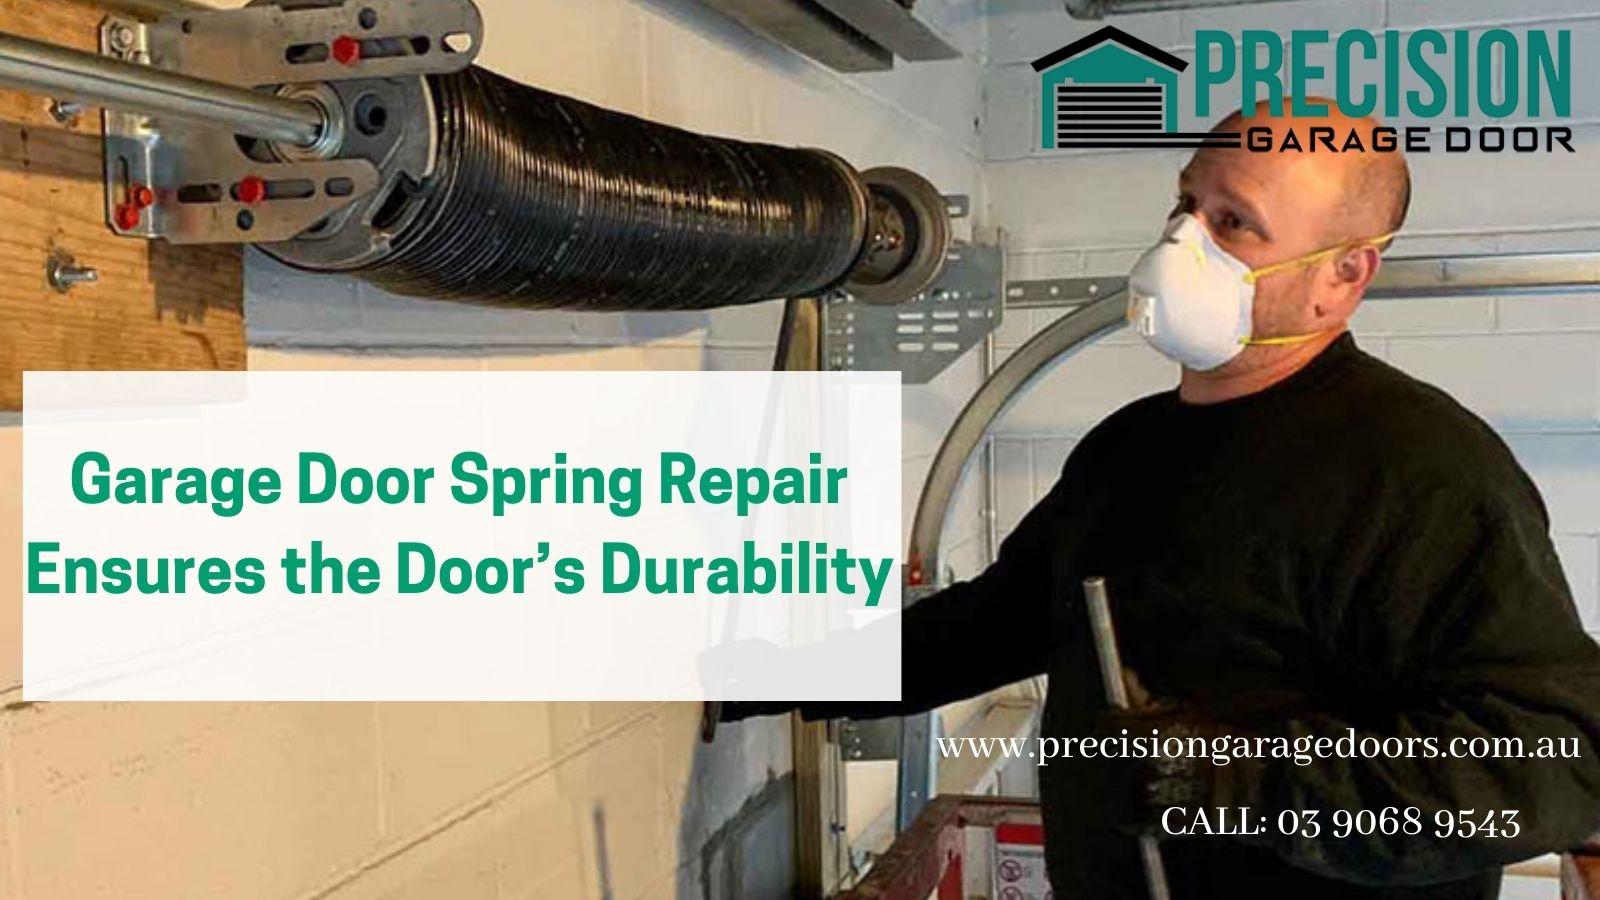 Garage Door Spring Repair Ensures the Door’s Durability